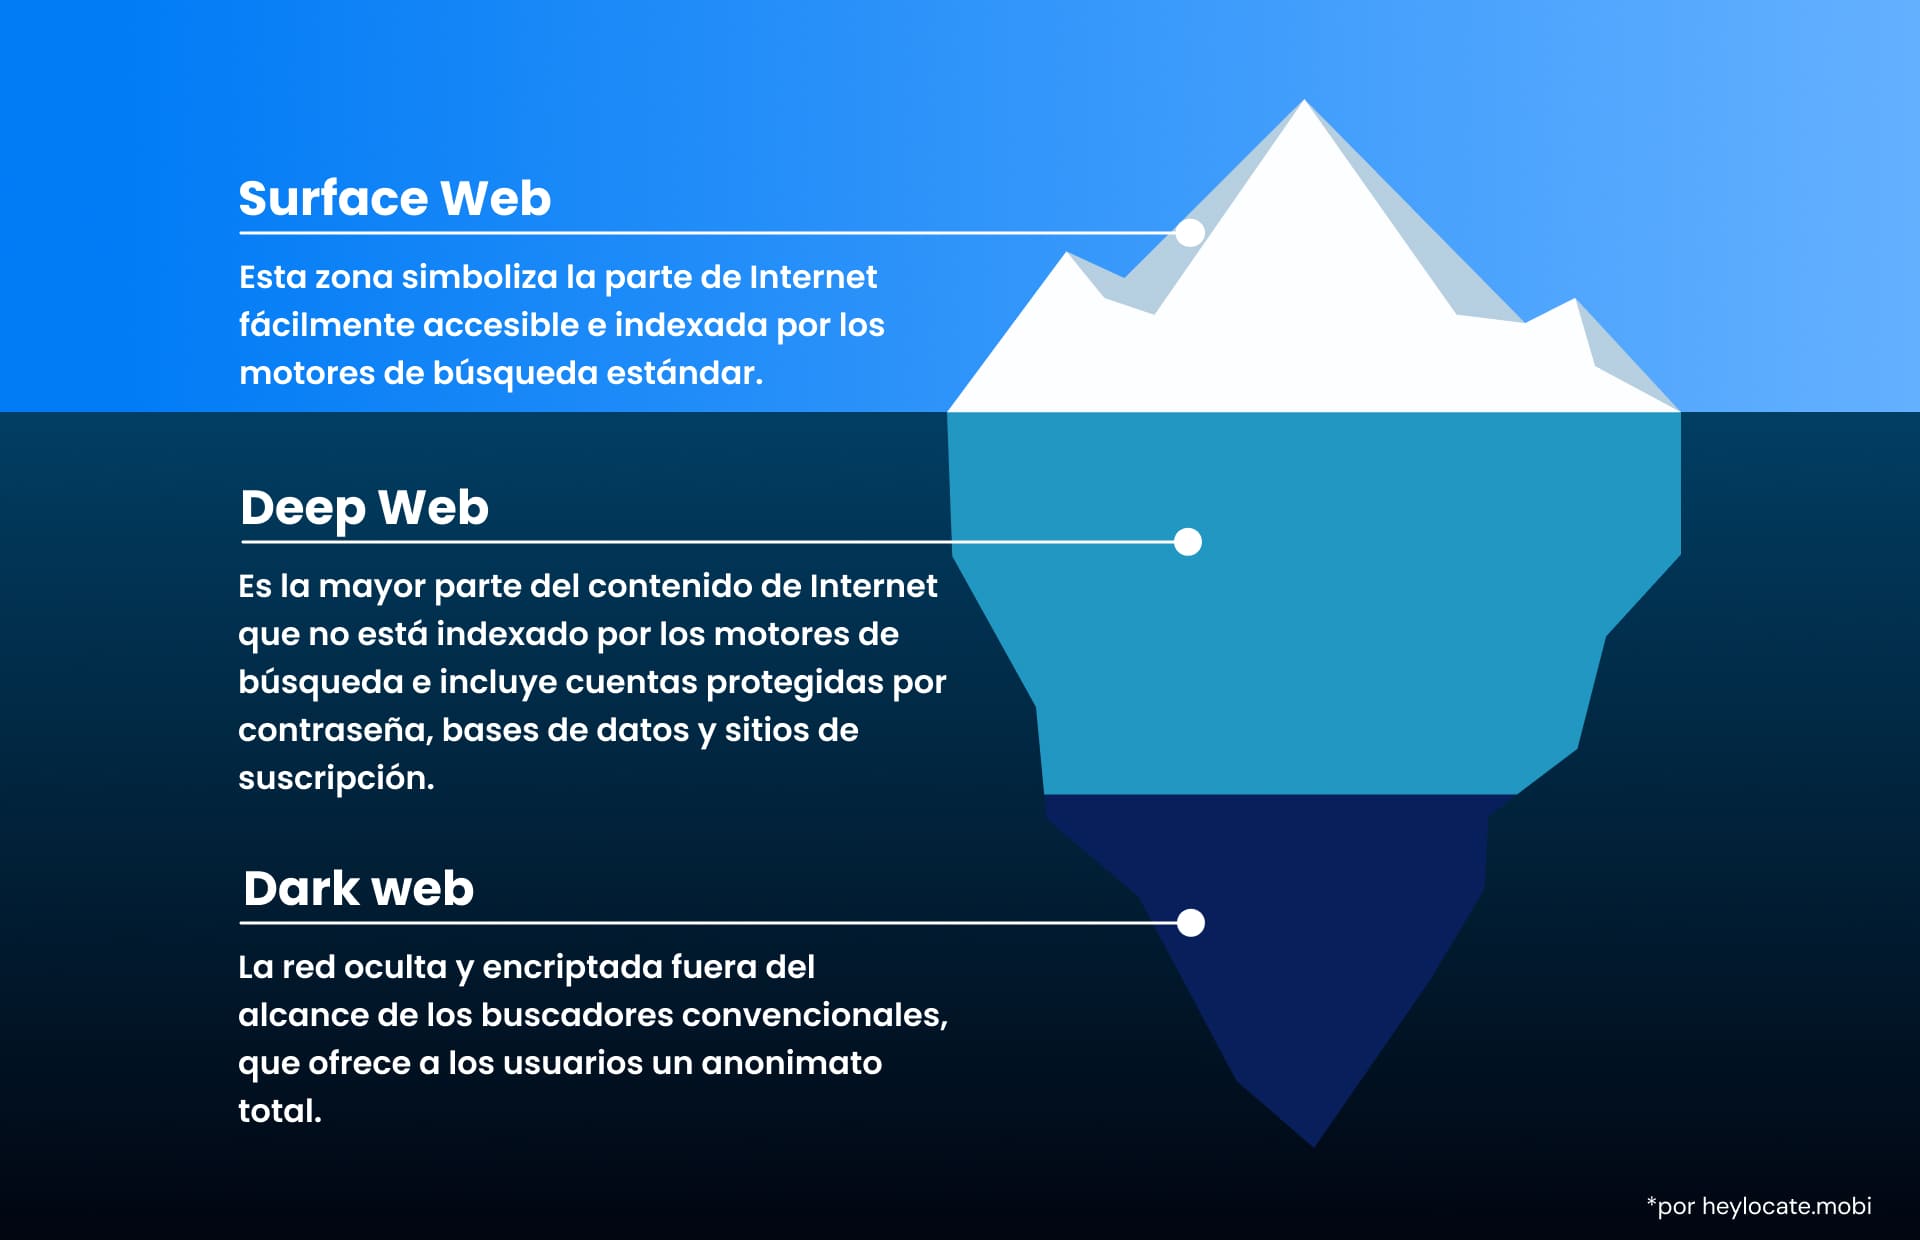 Imagen de un iceberg con las tres partes de la web: la web pública de superficie, la web profunda y la web oscura anónima